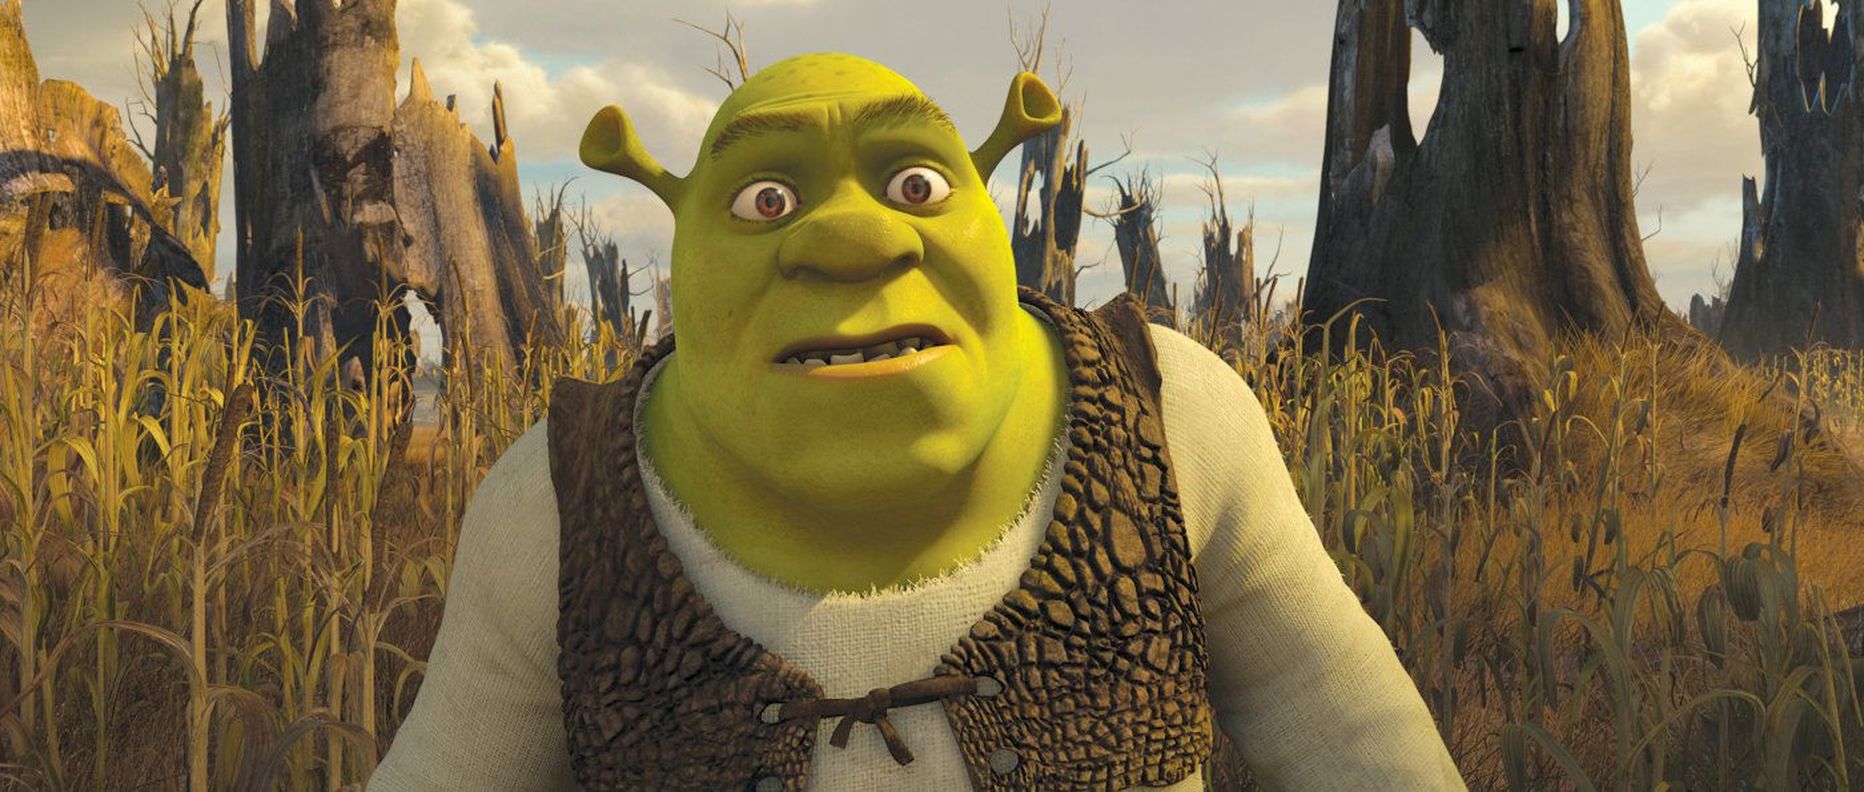 Vahakujude näitusel on vaadata ka animategelane Shrek